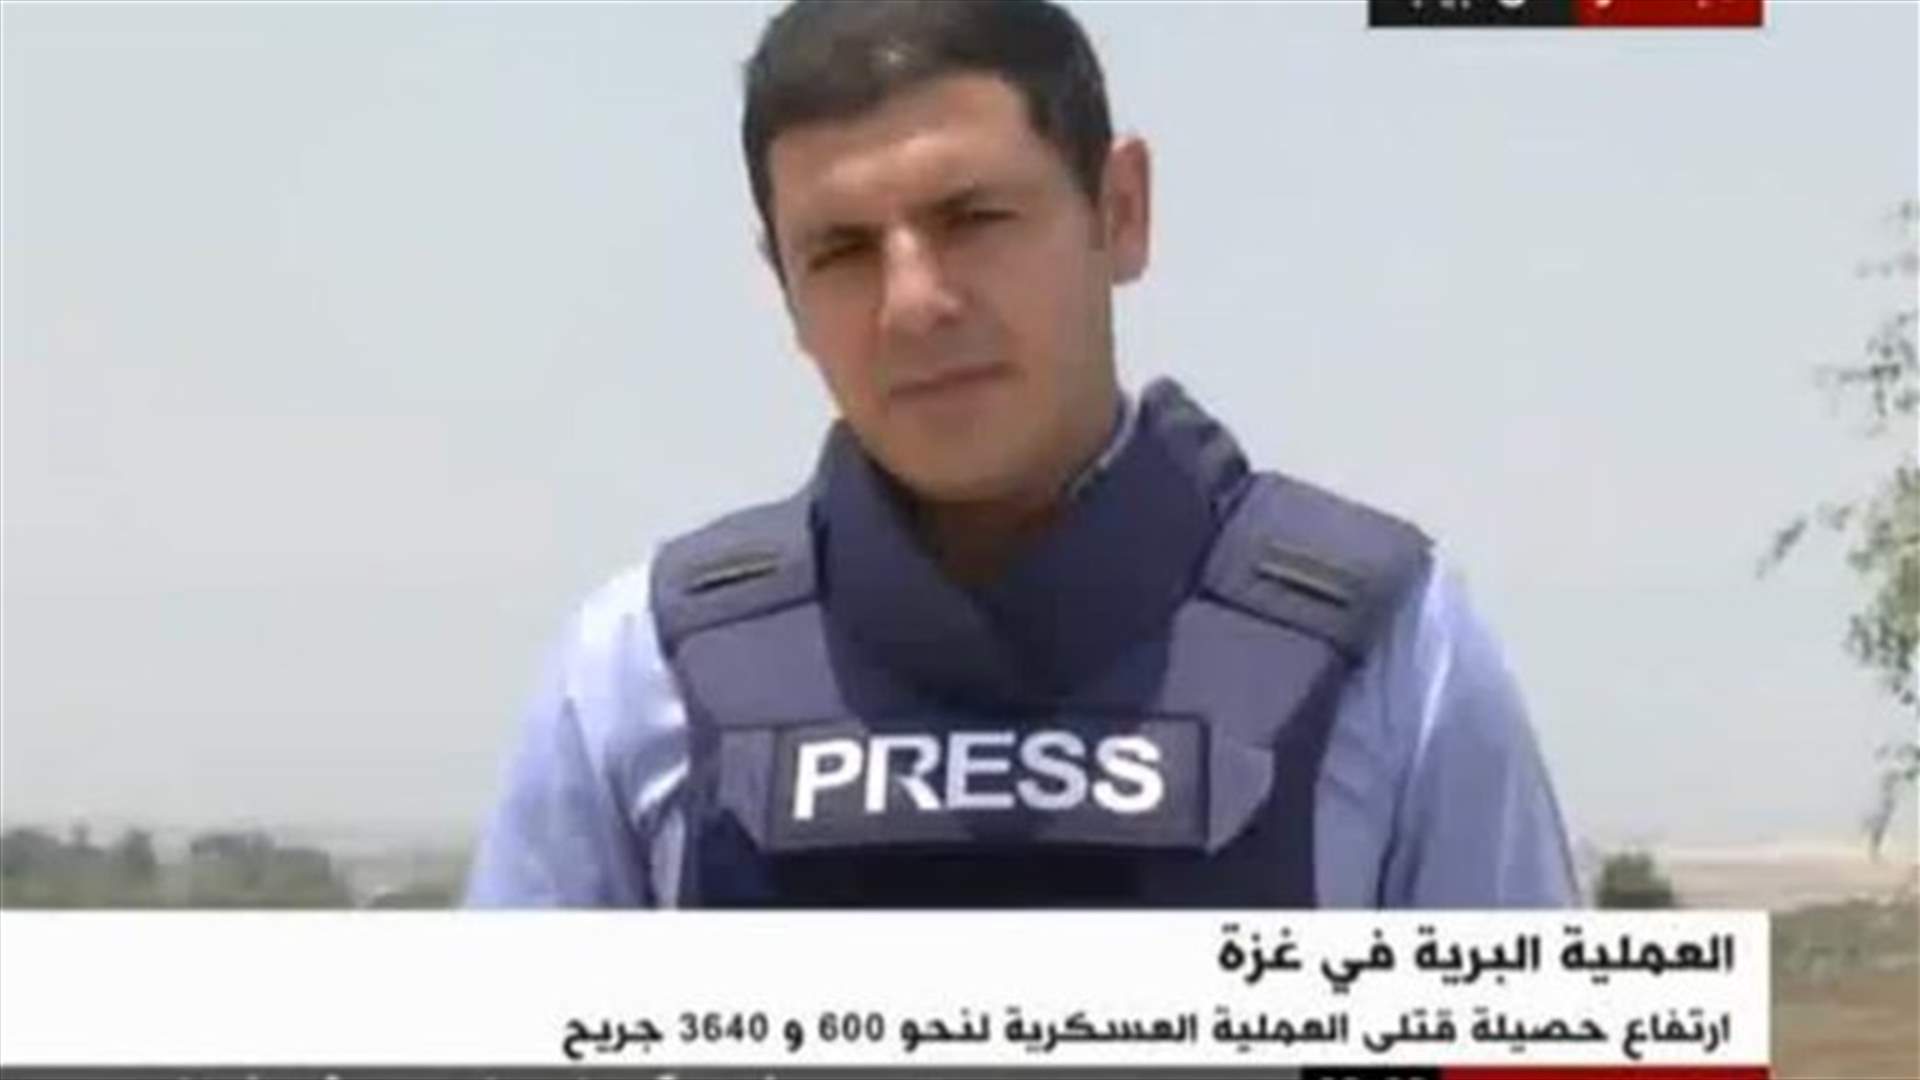 بالفيديو: اسرائيلي يعتدي على مراسل الـ BBC عربي مباشرة على الهواء